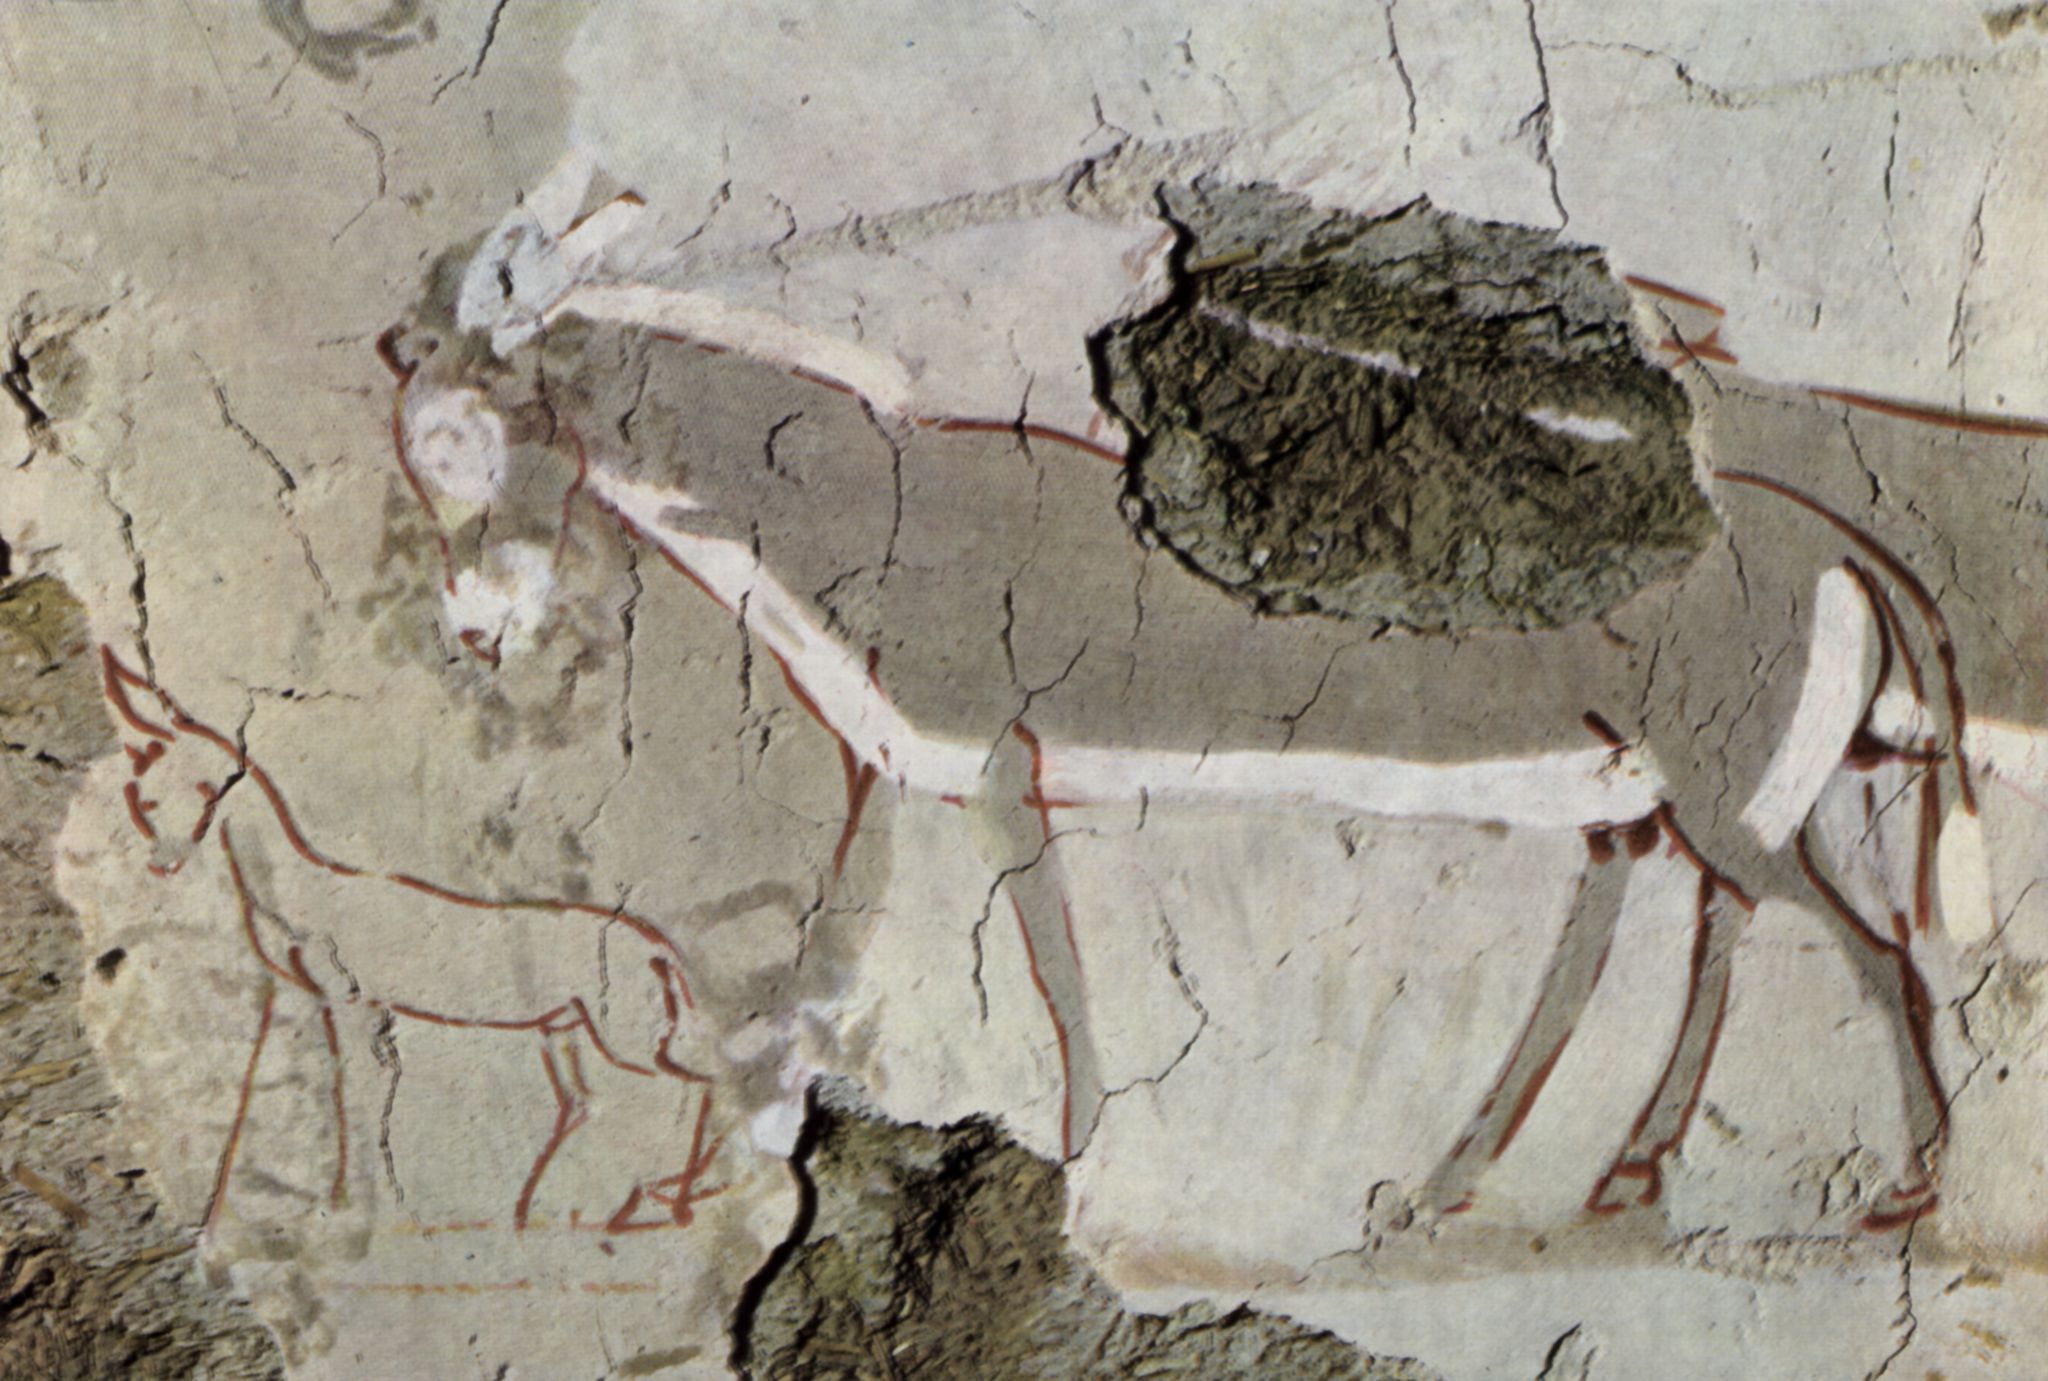 gyptischer Maler um 1430 v. Chr.: Grabkammer eines Unbekannten, Szene: Esel